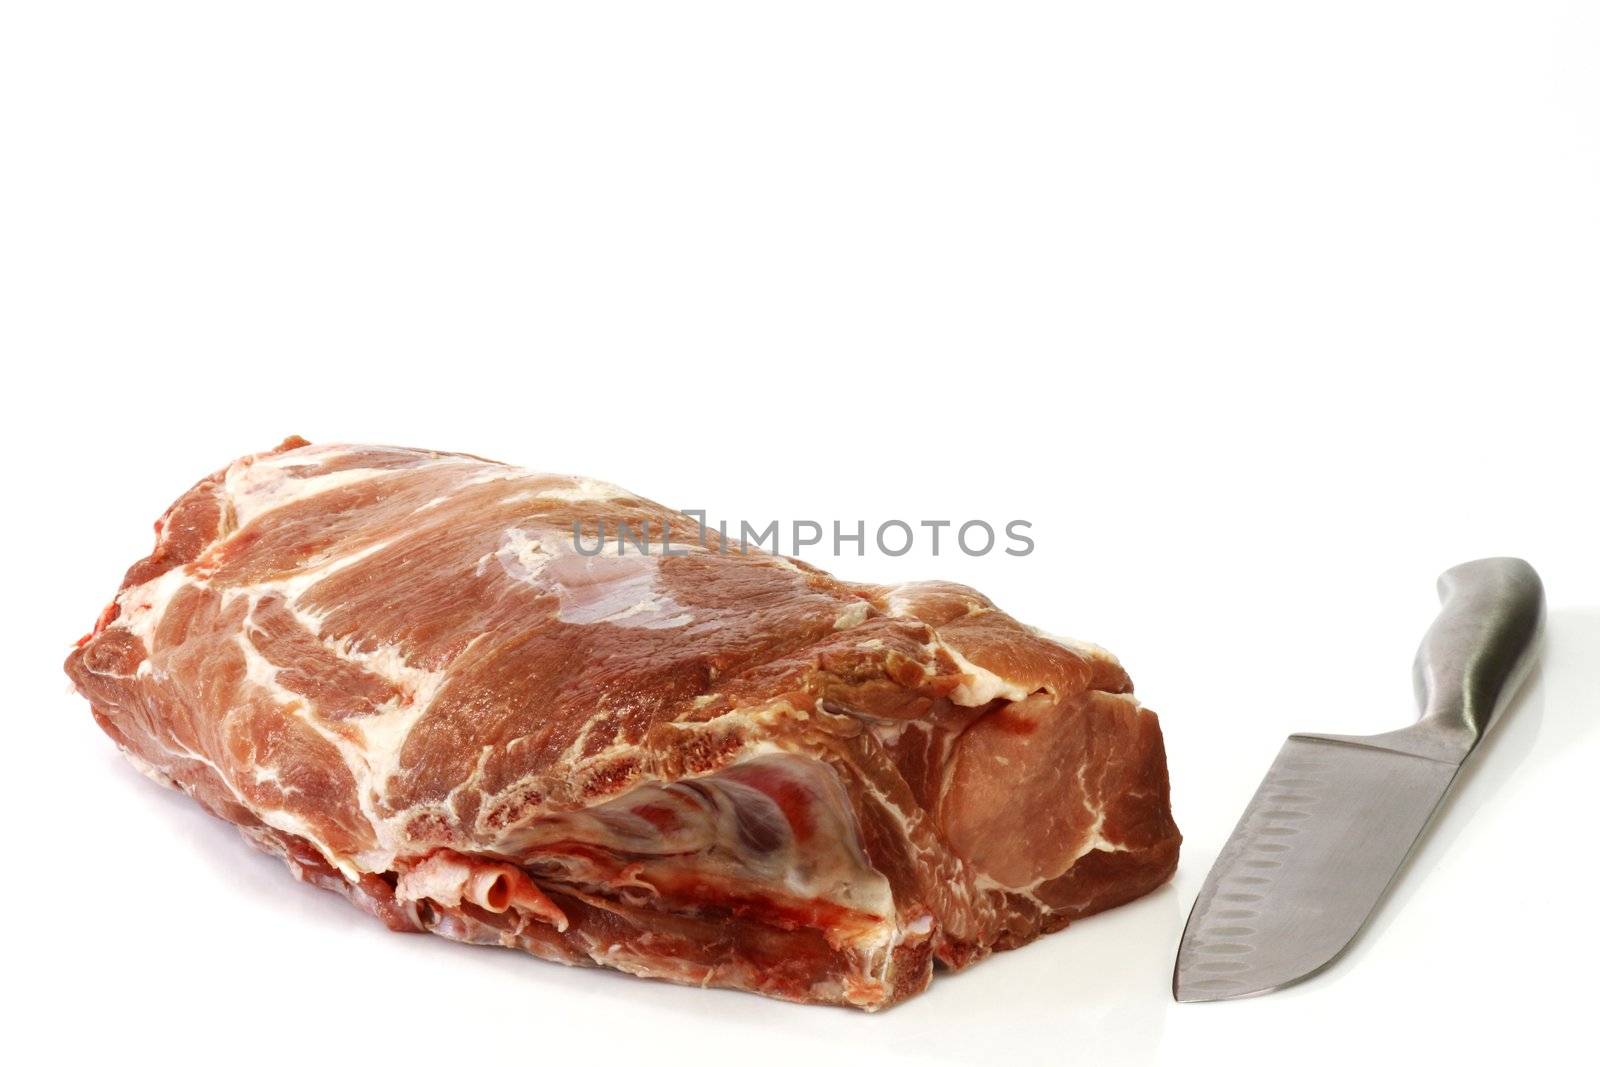 Pork chops by Teamarbeit